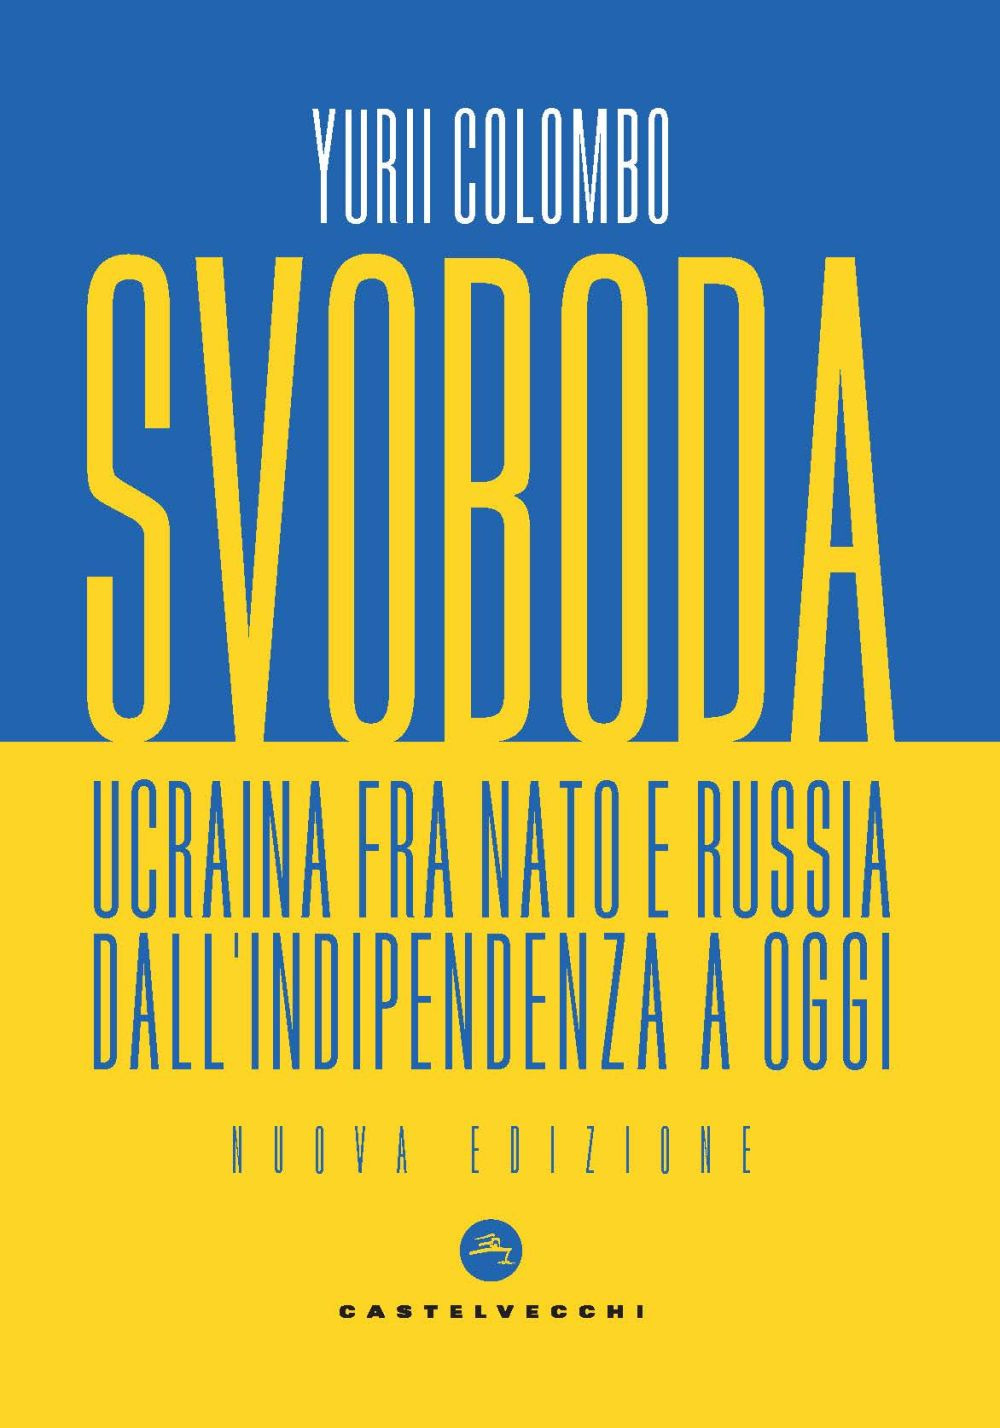 Image of Svoboda. Ucraina fra NATO e Russia dall'indipendenza a oggi